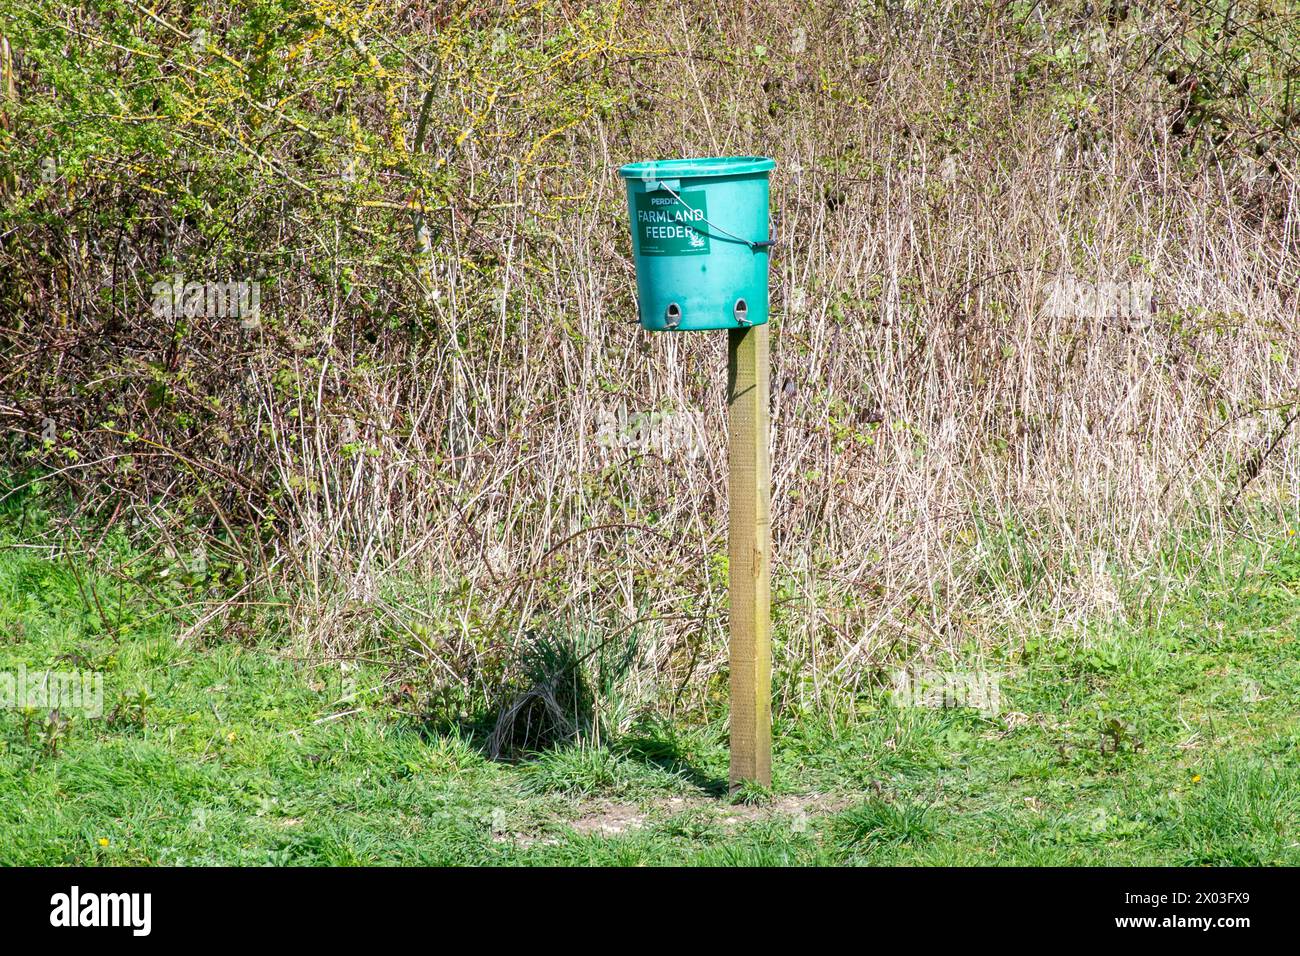 Futtermittel für Farmvögel, ein Futterbehälter für Vögel an einem Pfosten zur Fütterung von Farmvögeln zur Erhaltung seltener Arten, South Downs, West Sussex, England, Vereinigtes Königreich Stockfoto